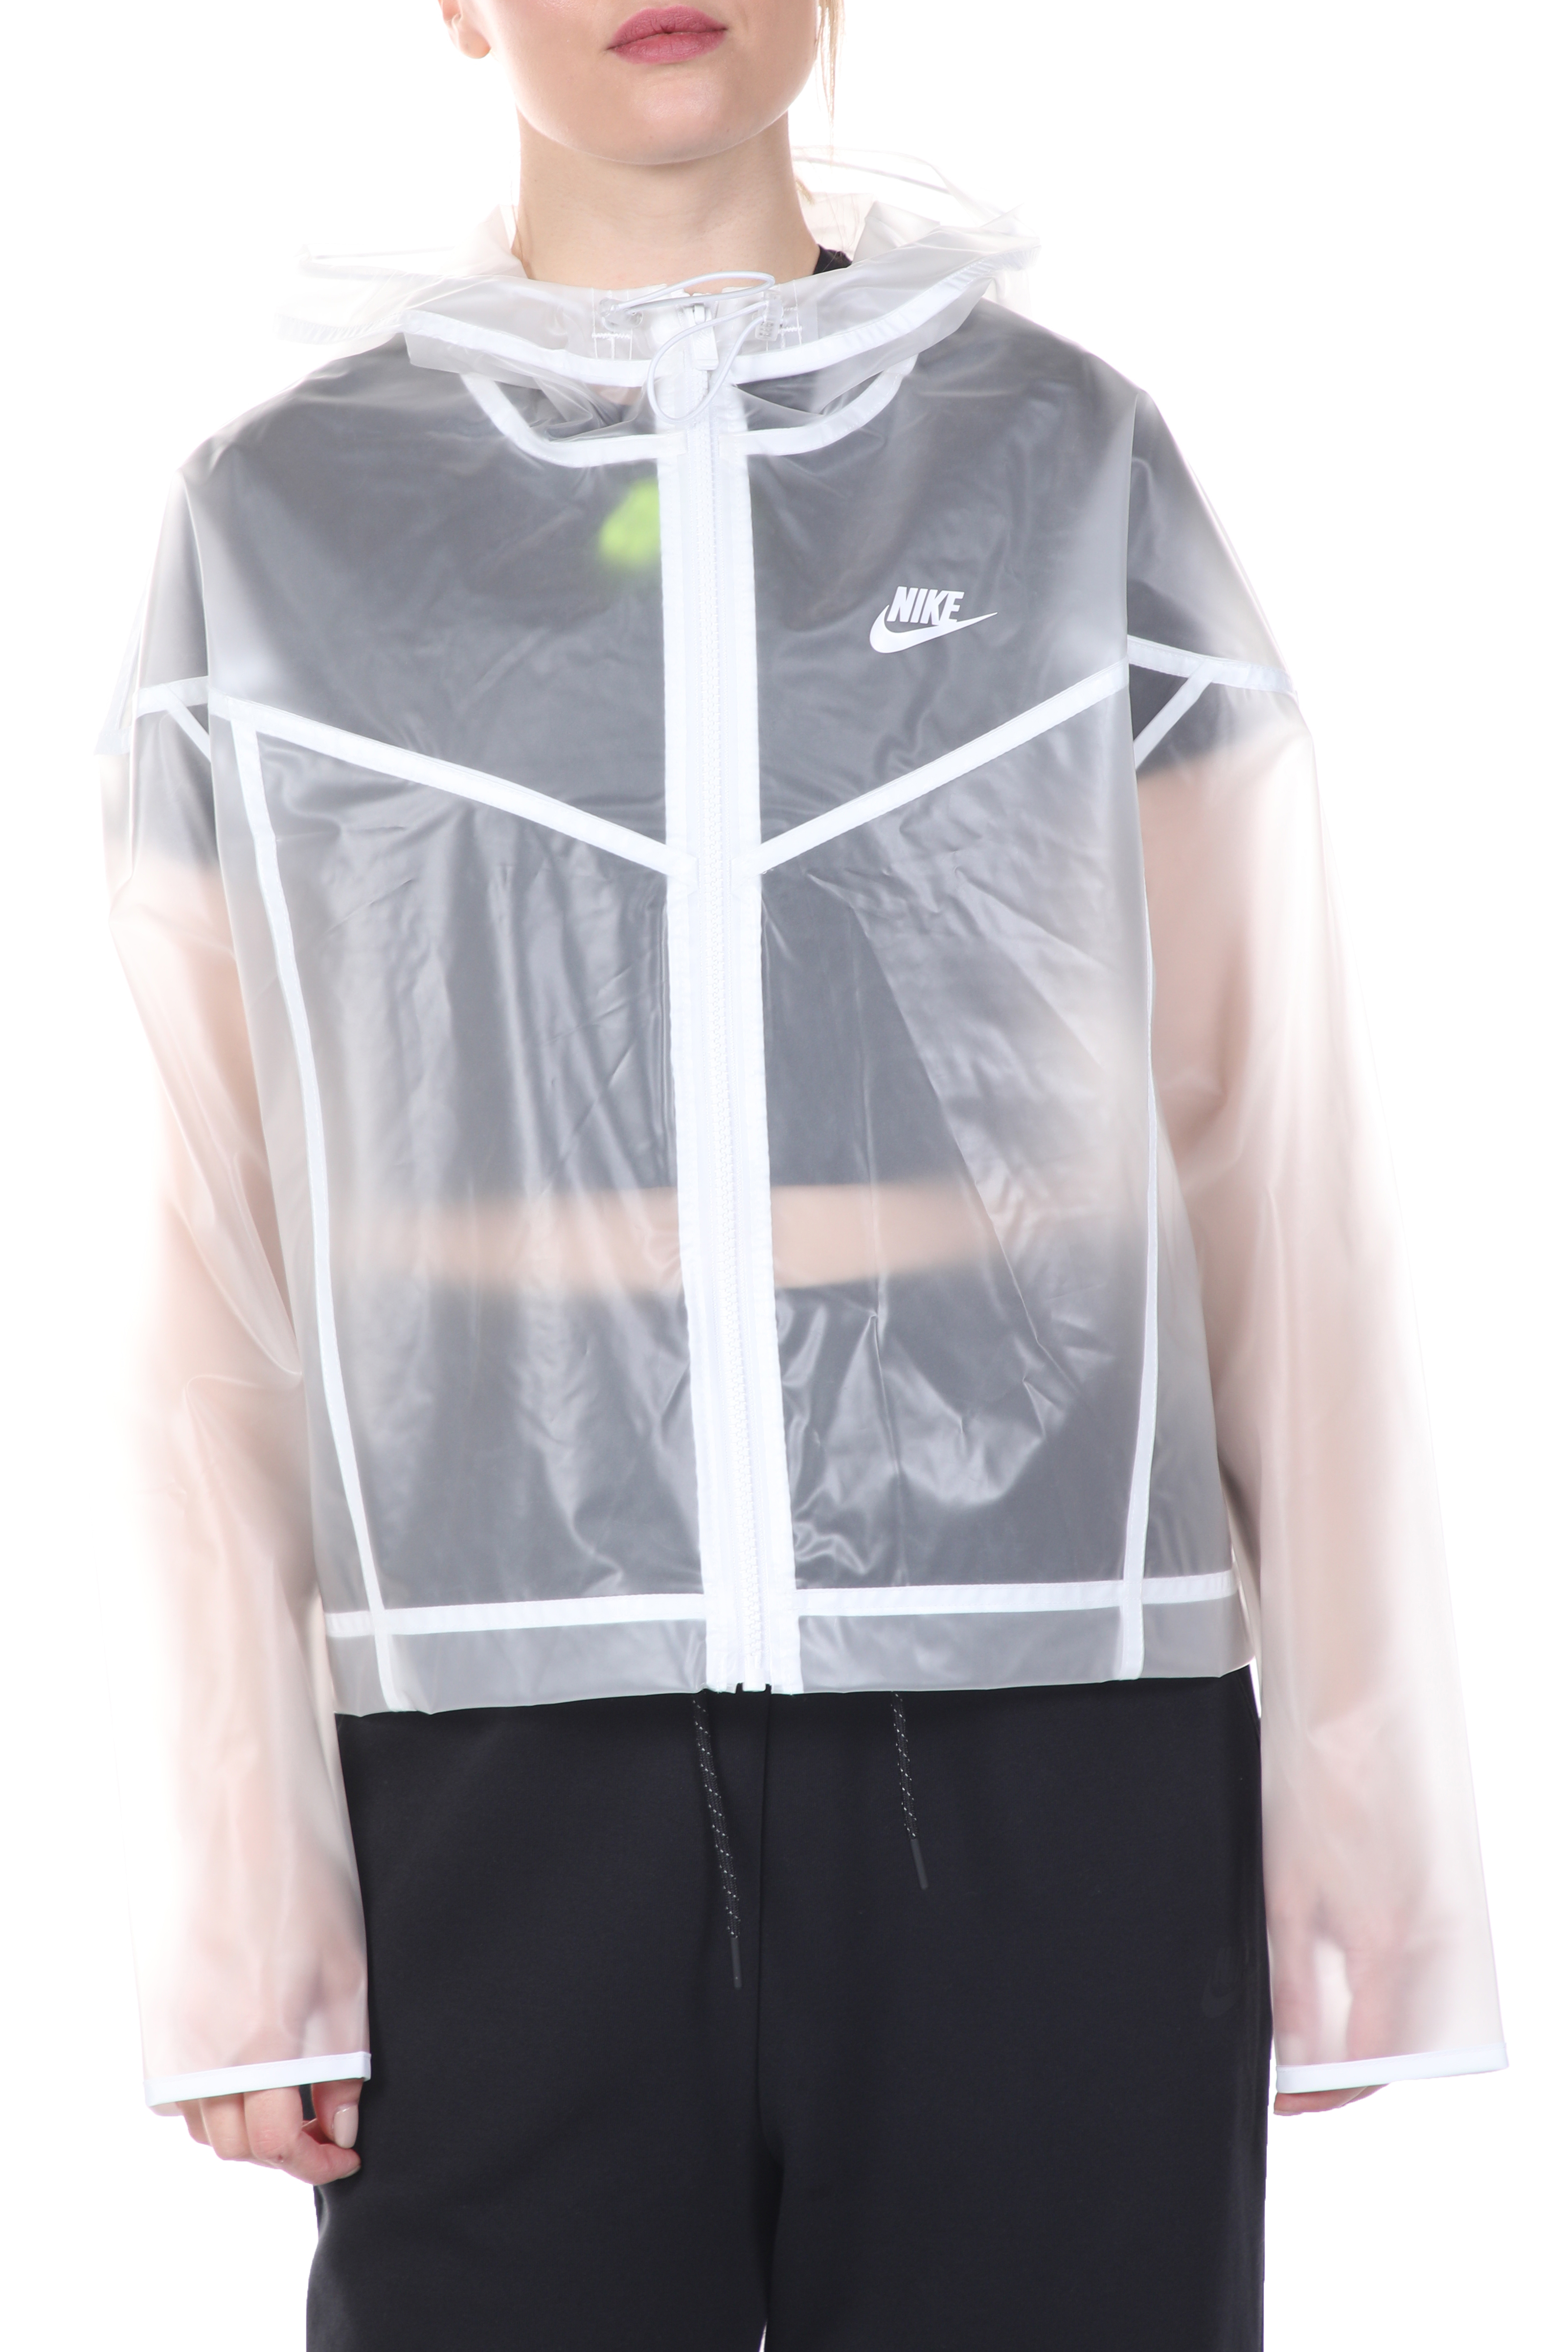 Γυναικεία/Ρούχα/Πανωφόρια/Τζάκετς NIKE - Γυναικείο αδιάβροχο jacket NIKE NSW WR JKT TRANSPARENT λευκό